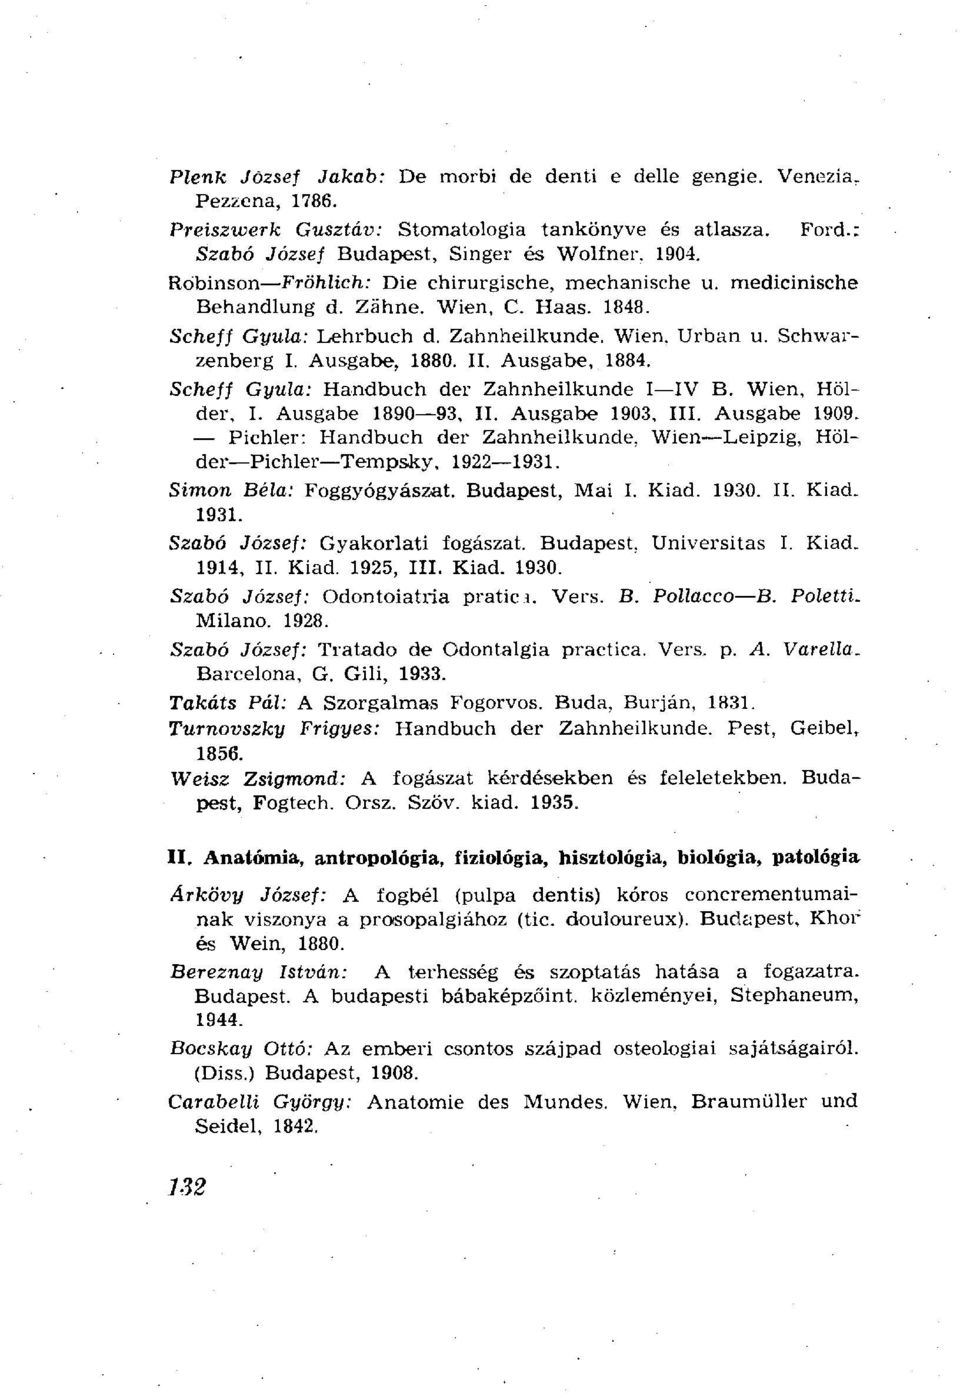 Ausgabe, 1884. Scheff Gyula: Handbuch der Zahnheilkunde I IV B. Wien, Holder, I. Ausgabe 1890 93, II. Ausgabe 1903, III. Ausgabe 1909.